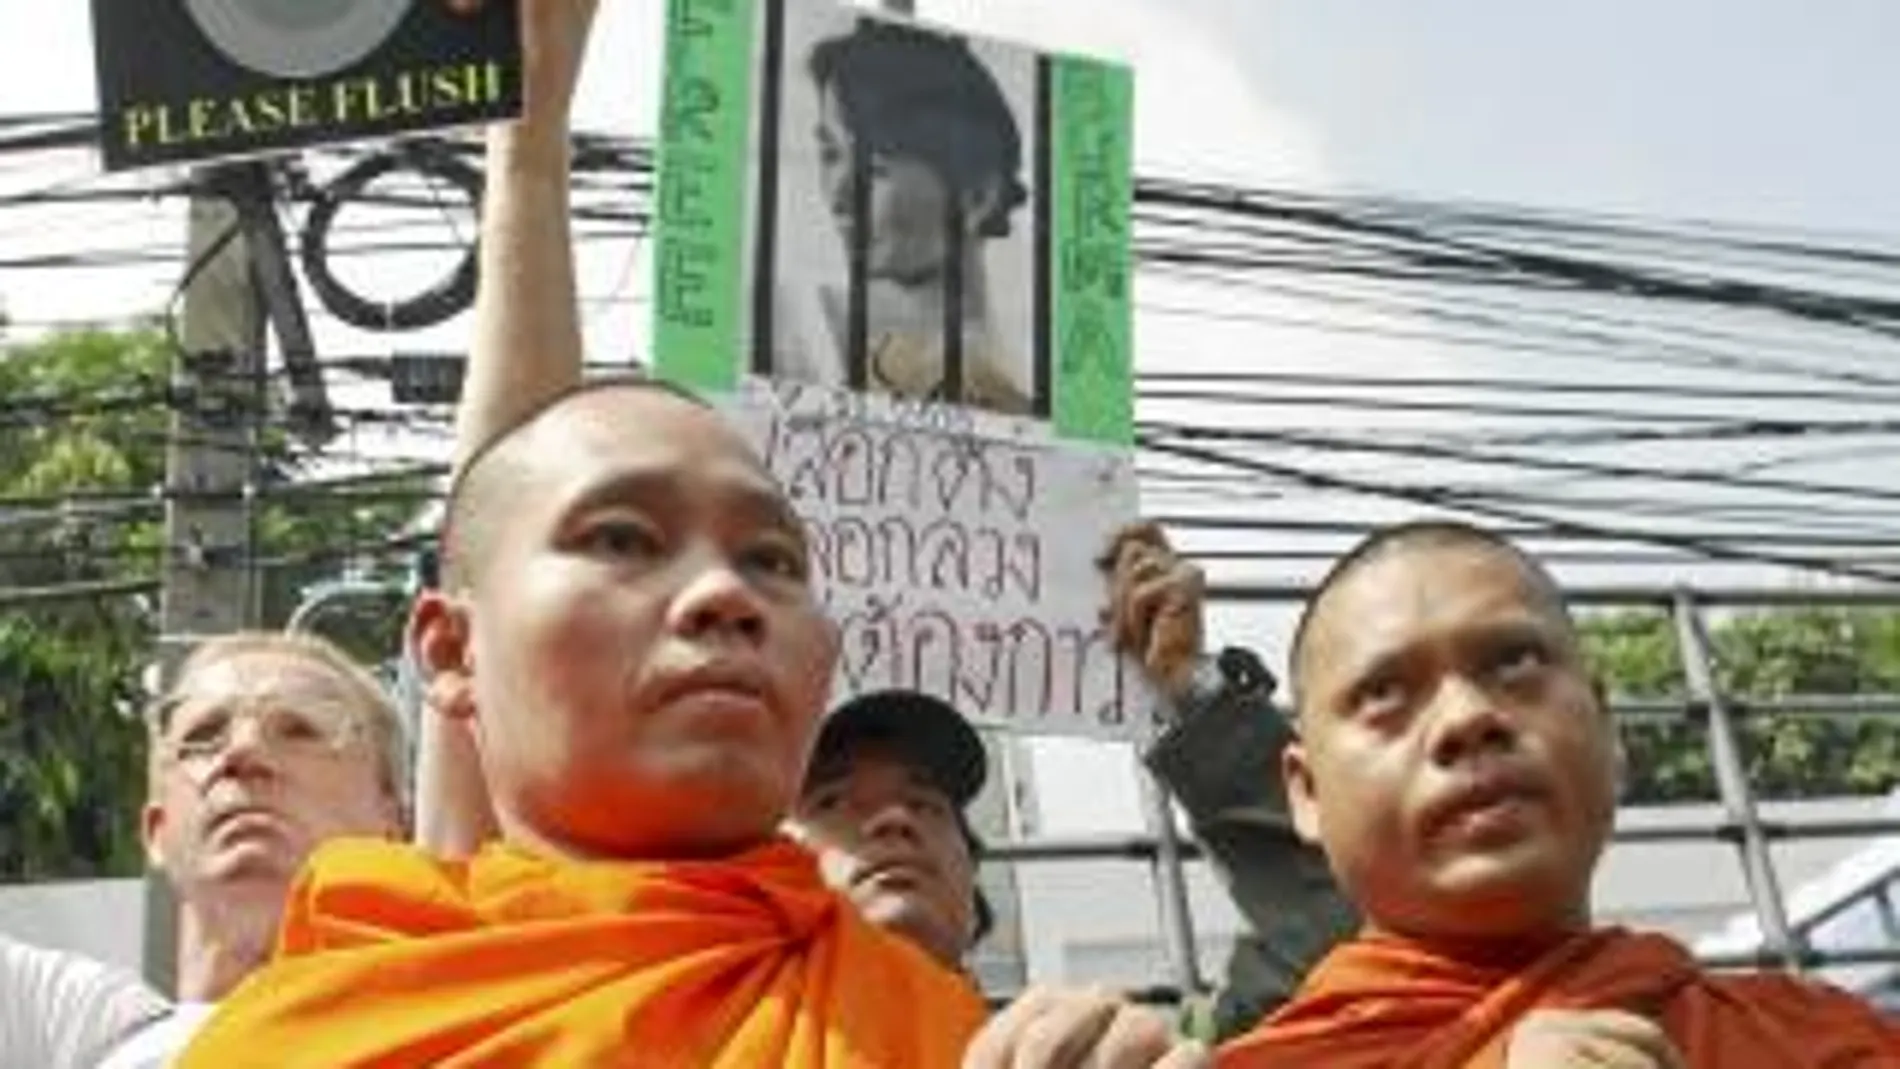 Dos monjes birmanos sujetan una pancarta con la cara de la opositora Aung San Suu Kyi, premio Nobel de la Paz y en arresto domiciliario